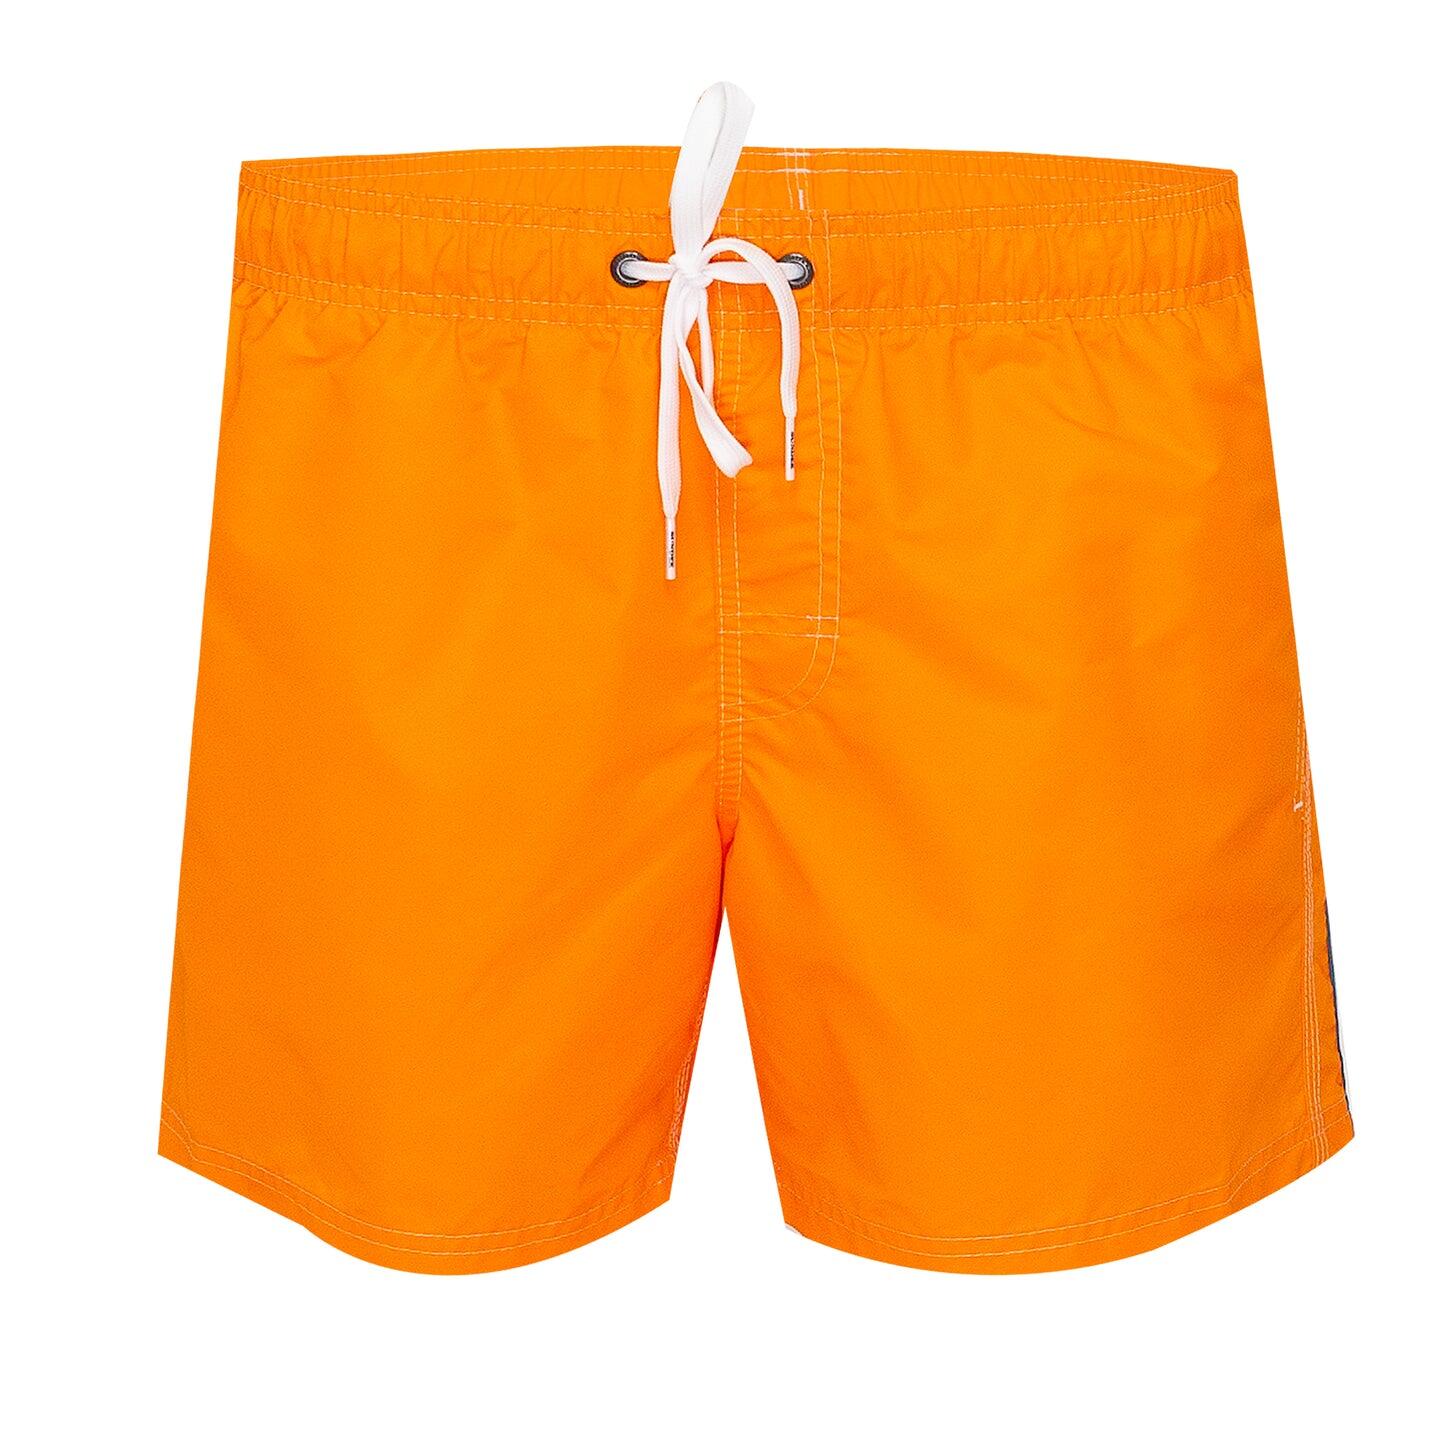 Orange Surf Shorts for Men